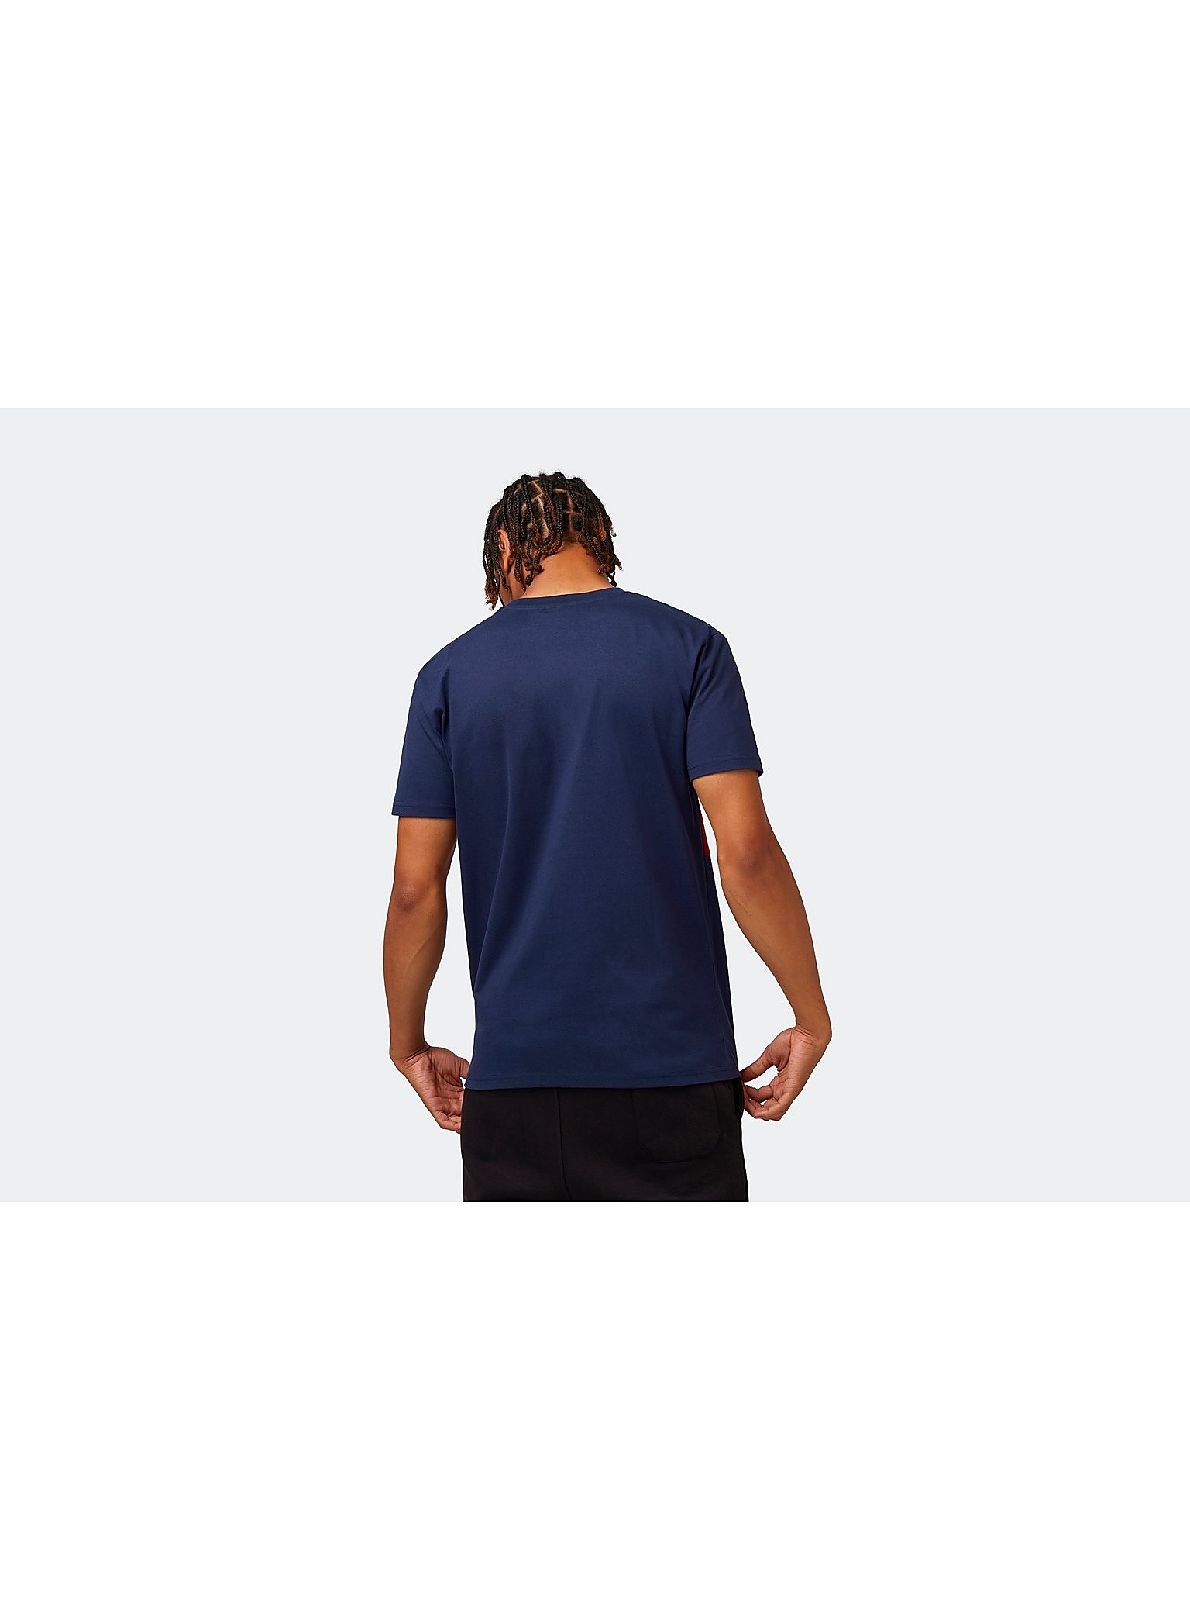 Arsenal Retro Crest Colour Block T-Shirt | Official Online Store